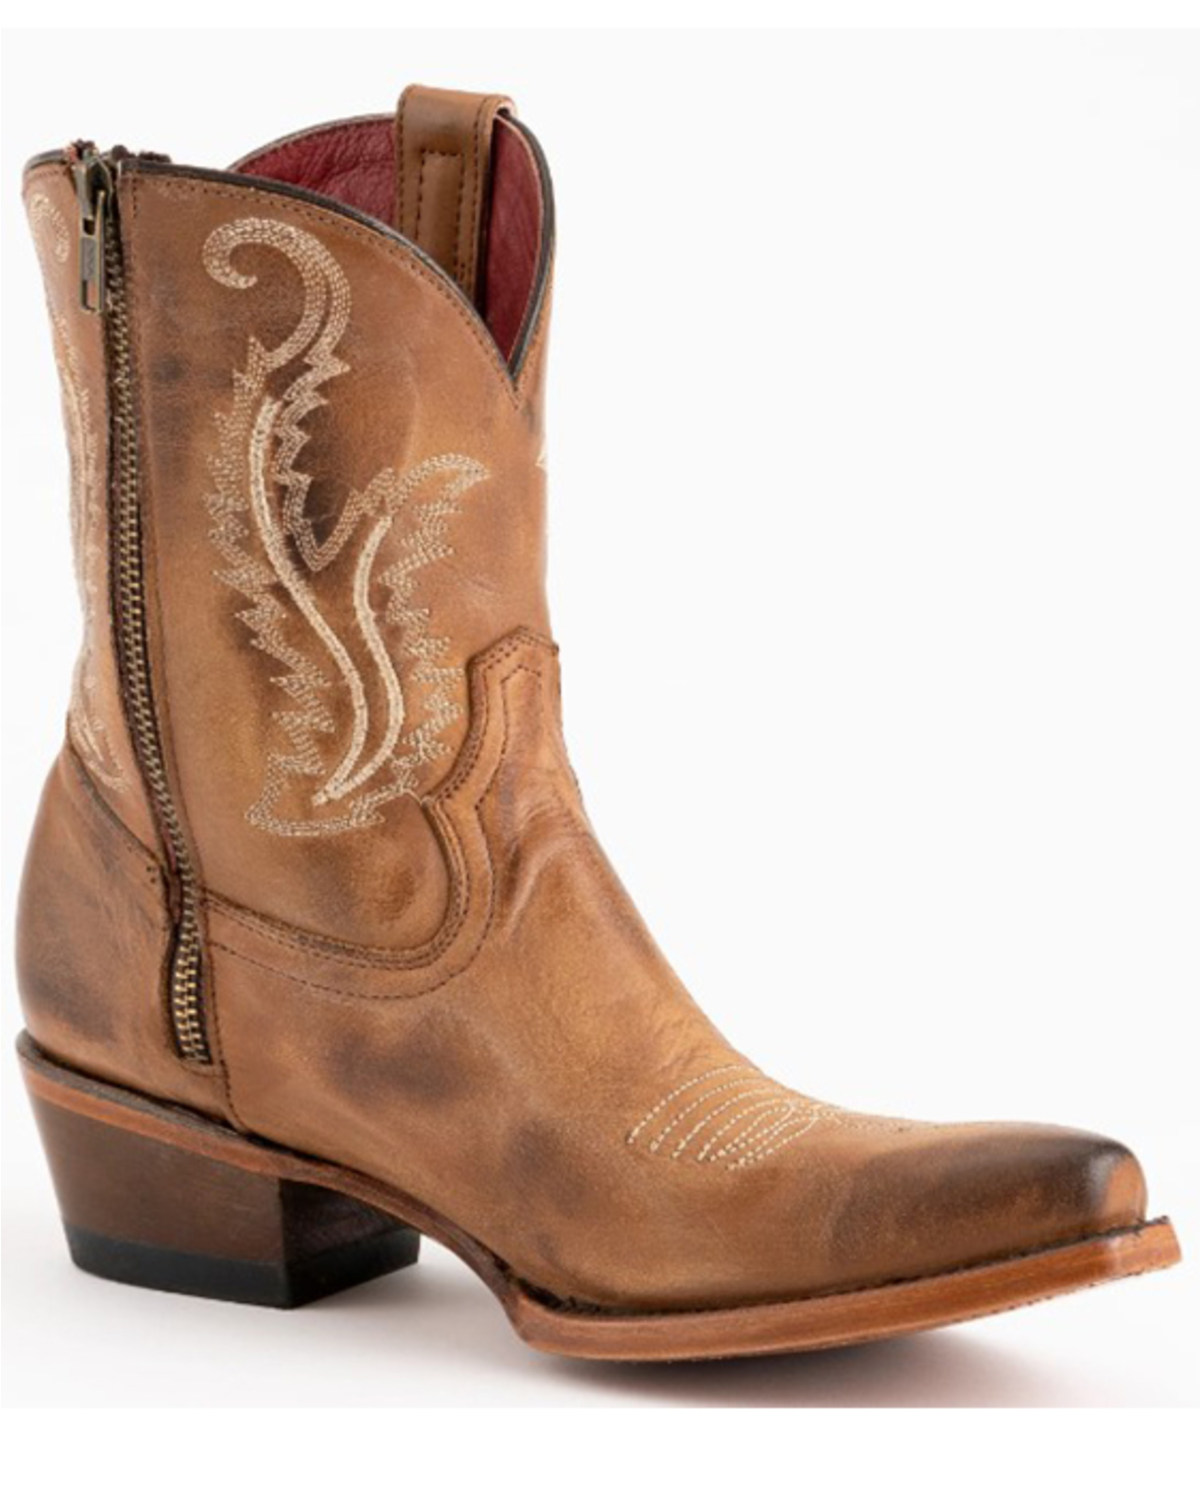 Ferrini Women's Molly Western Boots